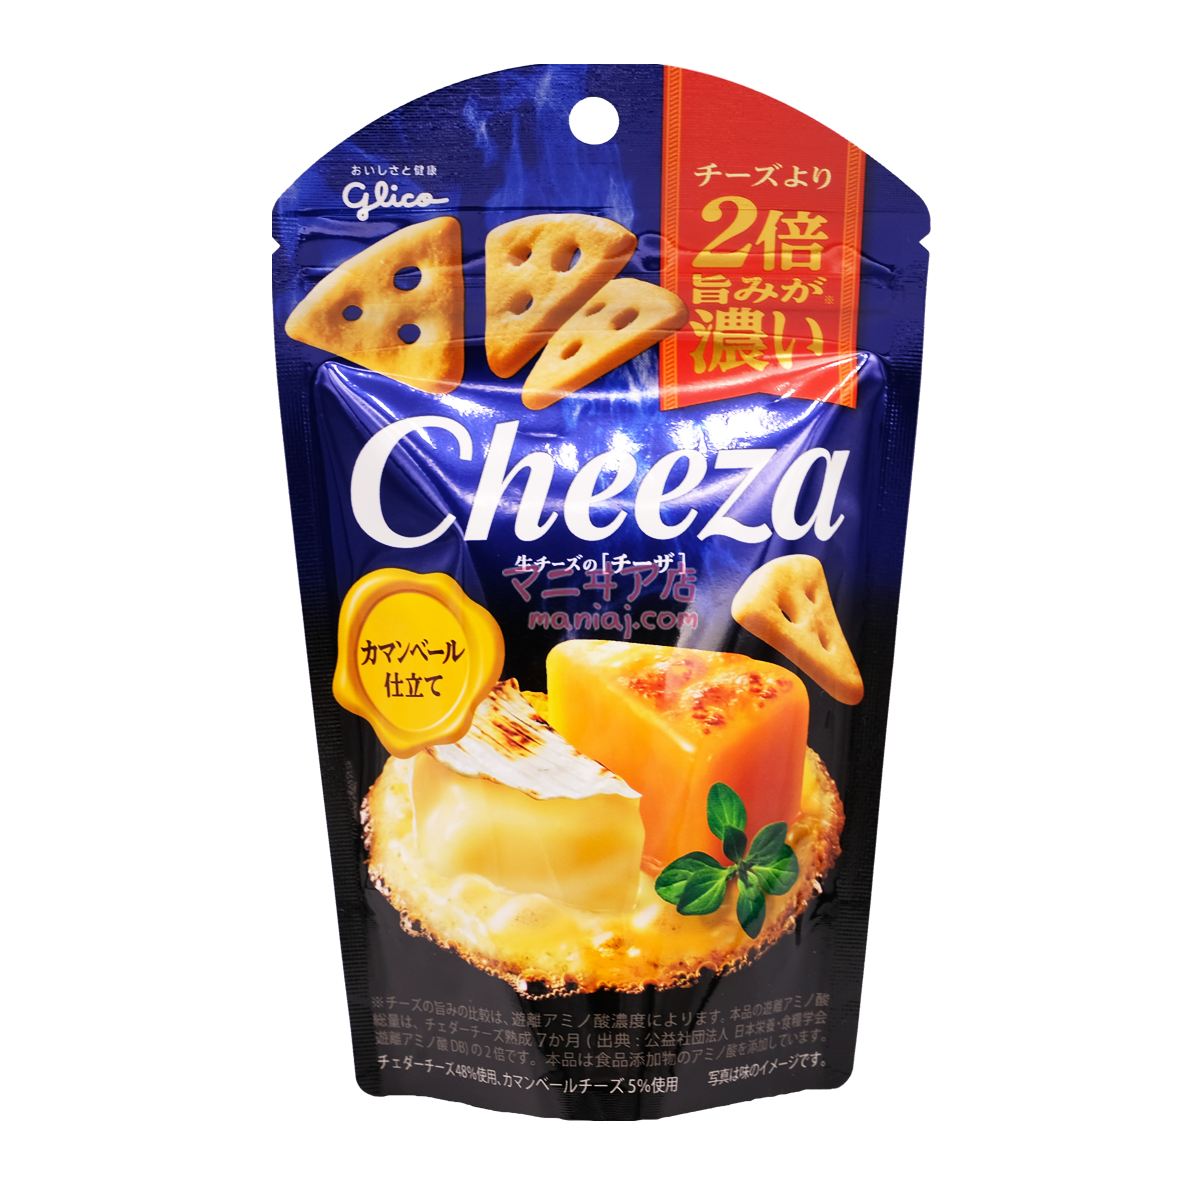 Cheeza Clover Cheese Crisps